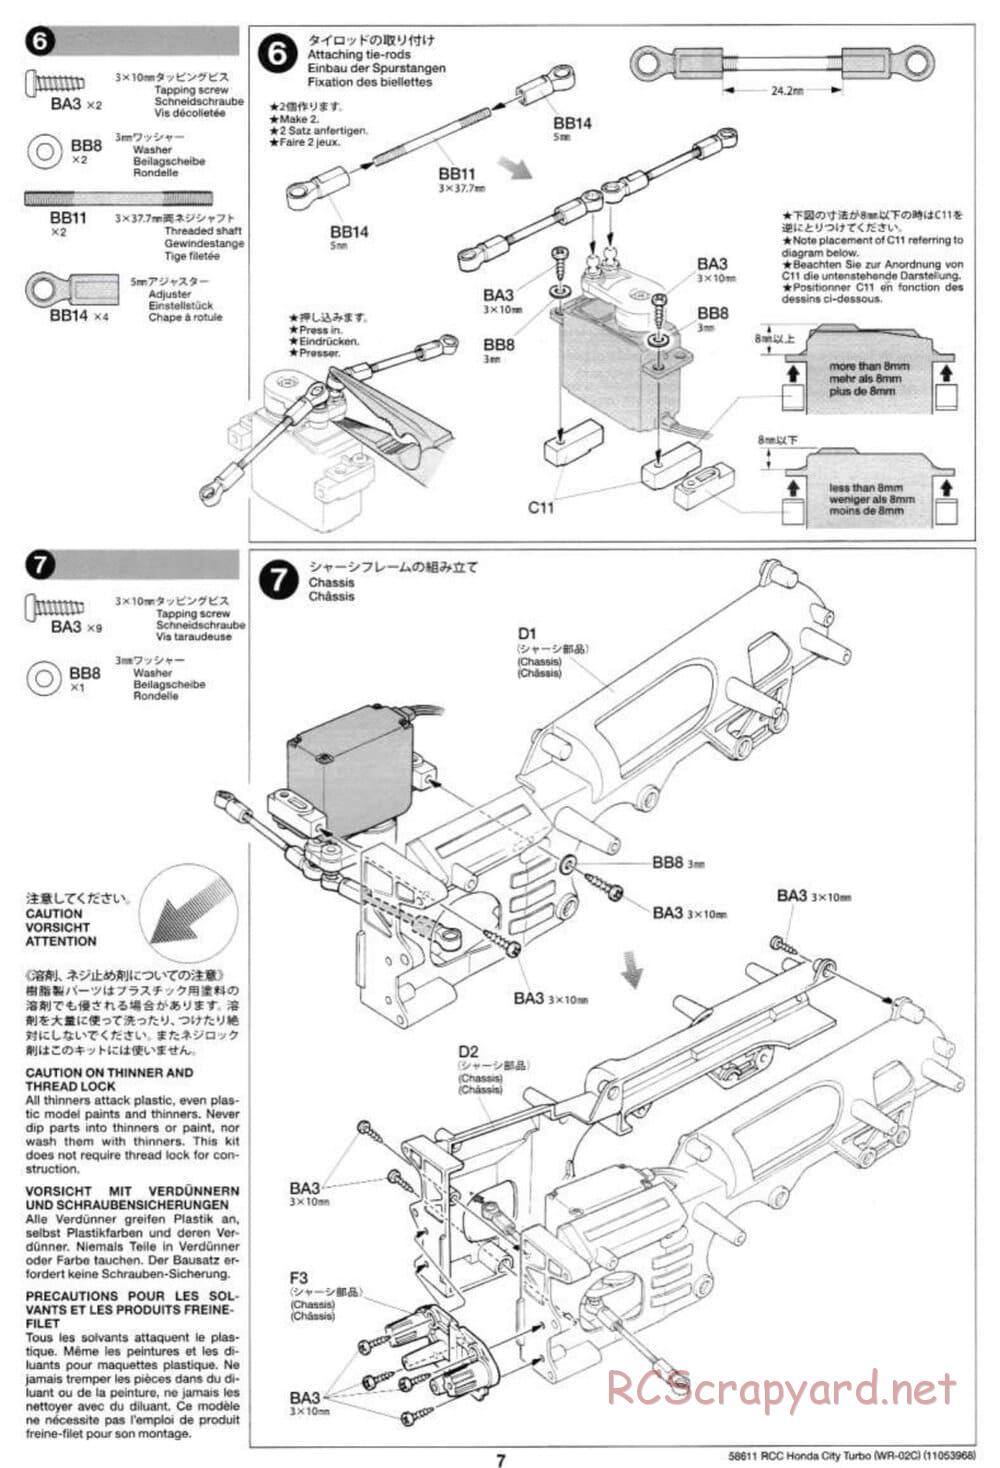 Tamiya - Honda City Turbo - WR-02C Chassis - Manual - Page 7